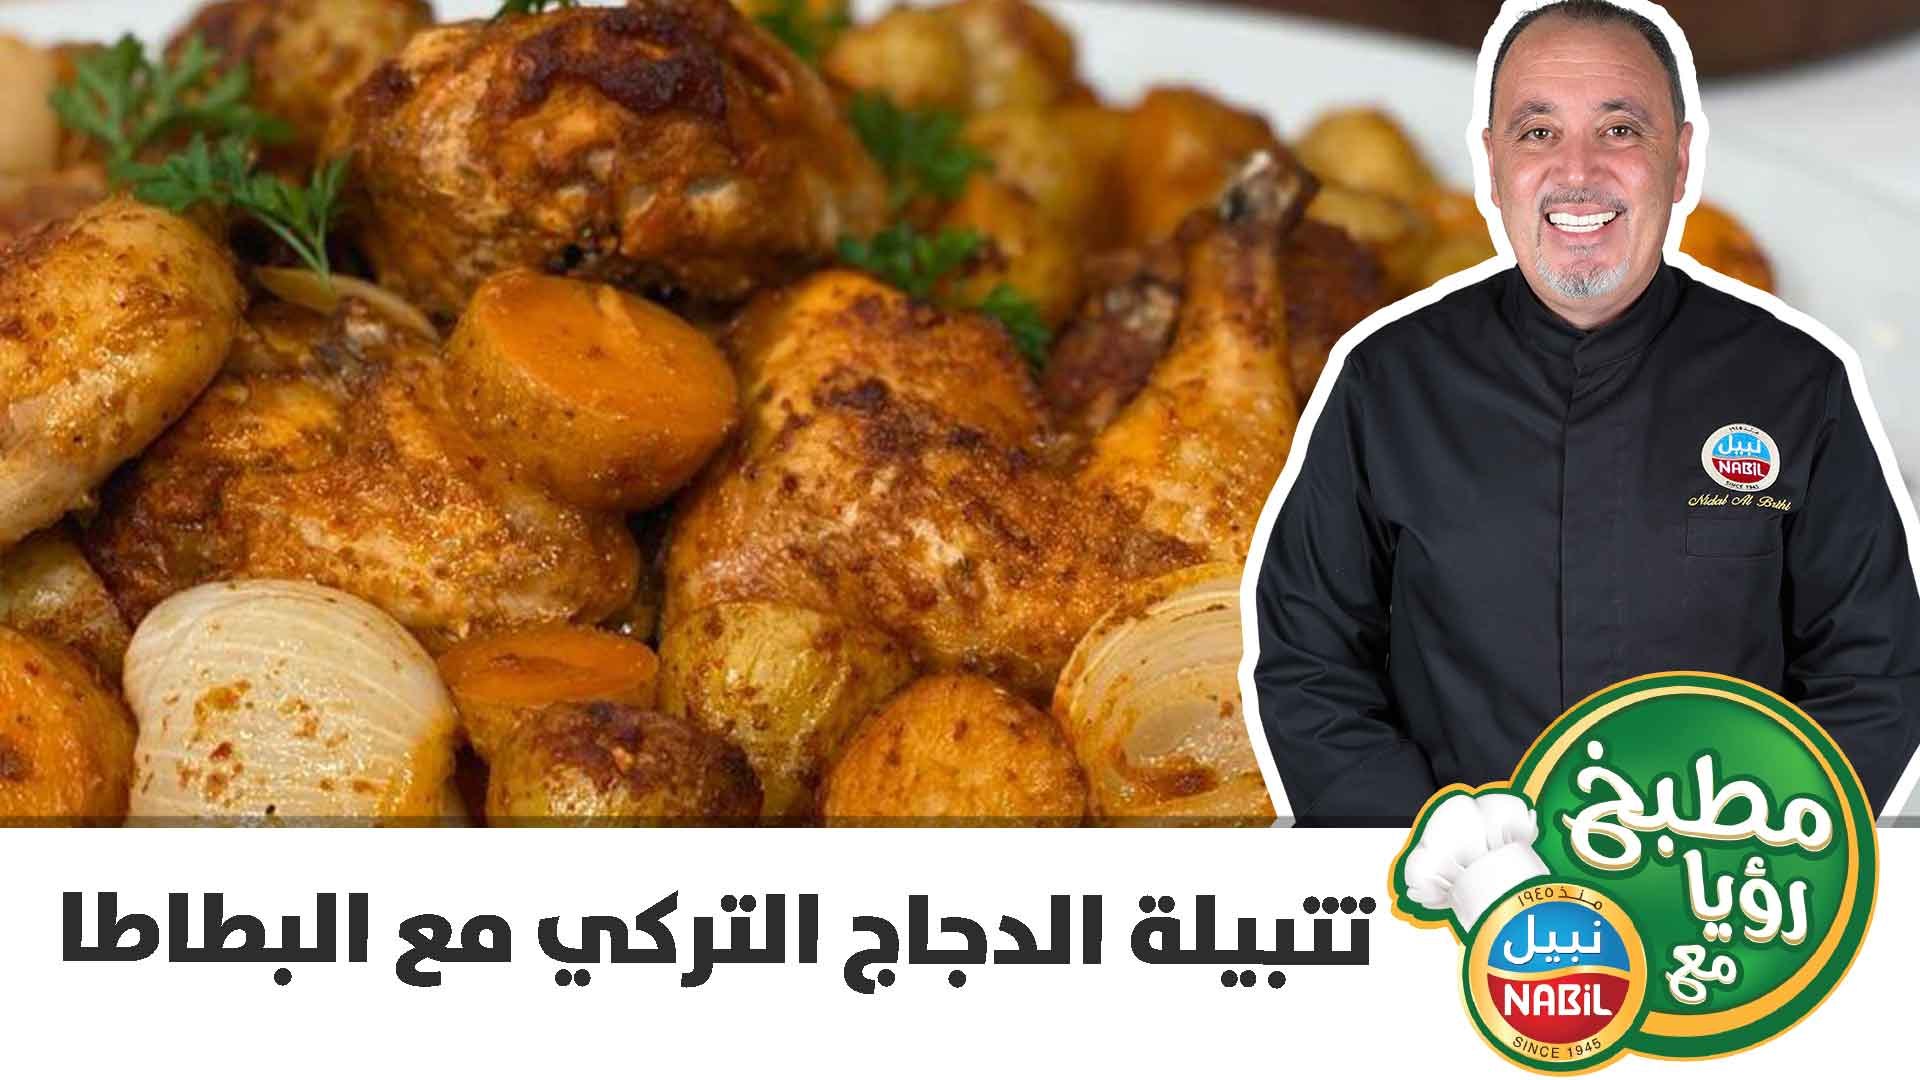 تتبيلة الدجاج التركي مع البطاطا - فيديو Dailymotion